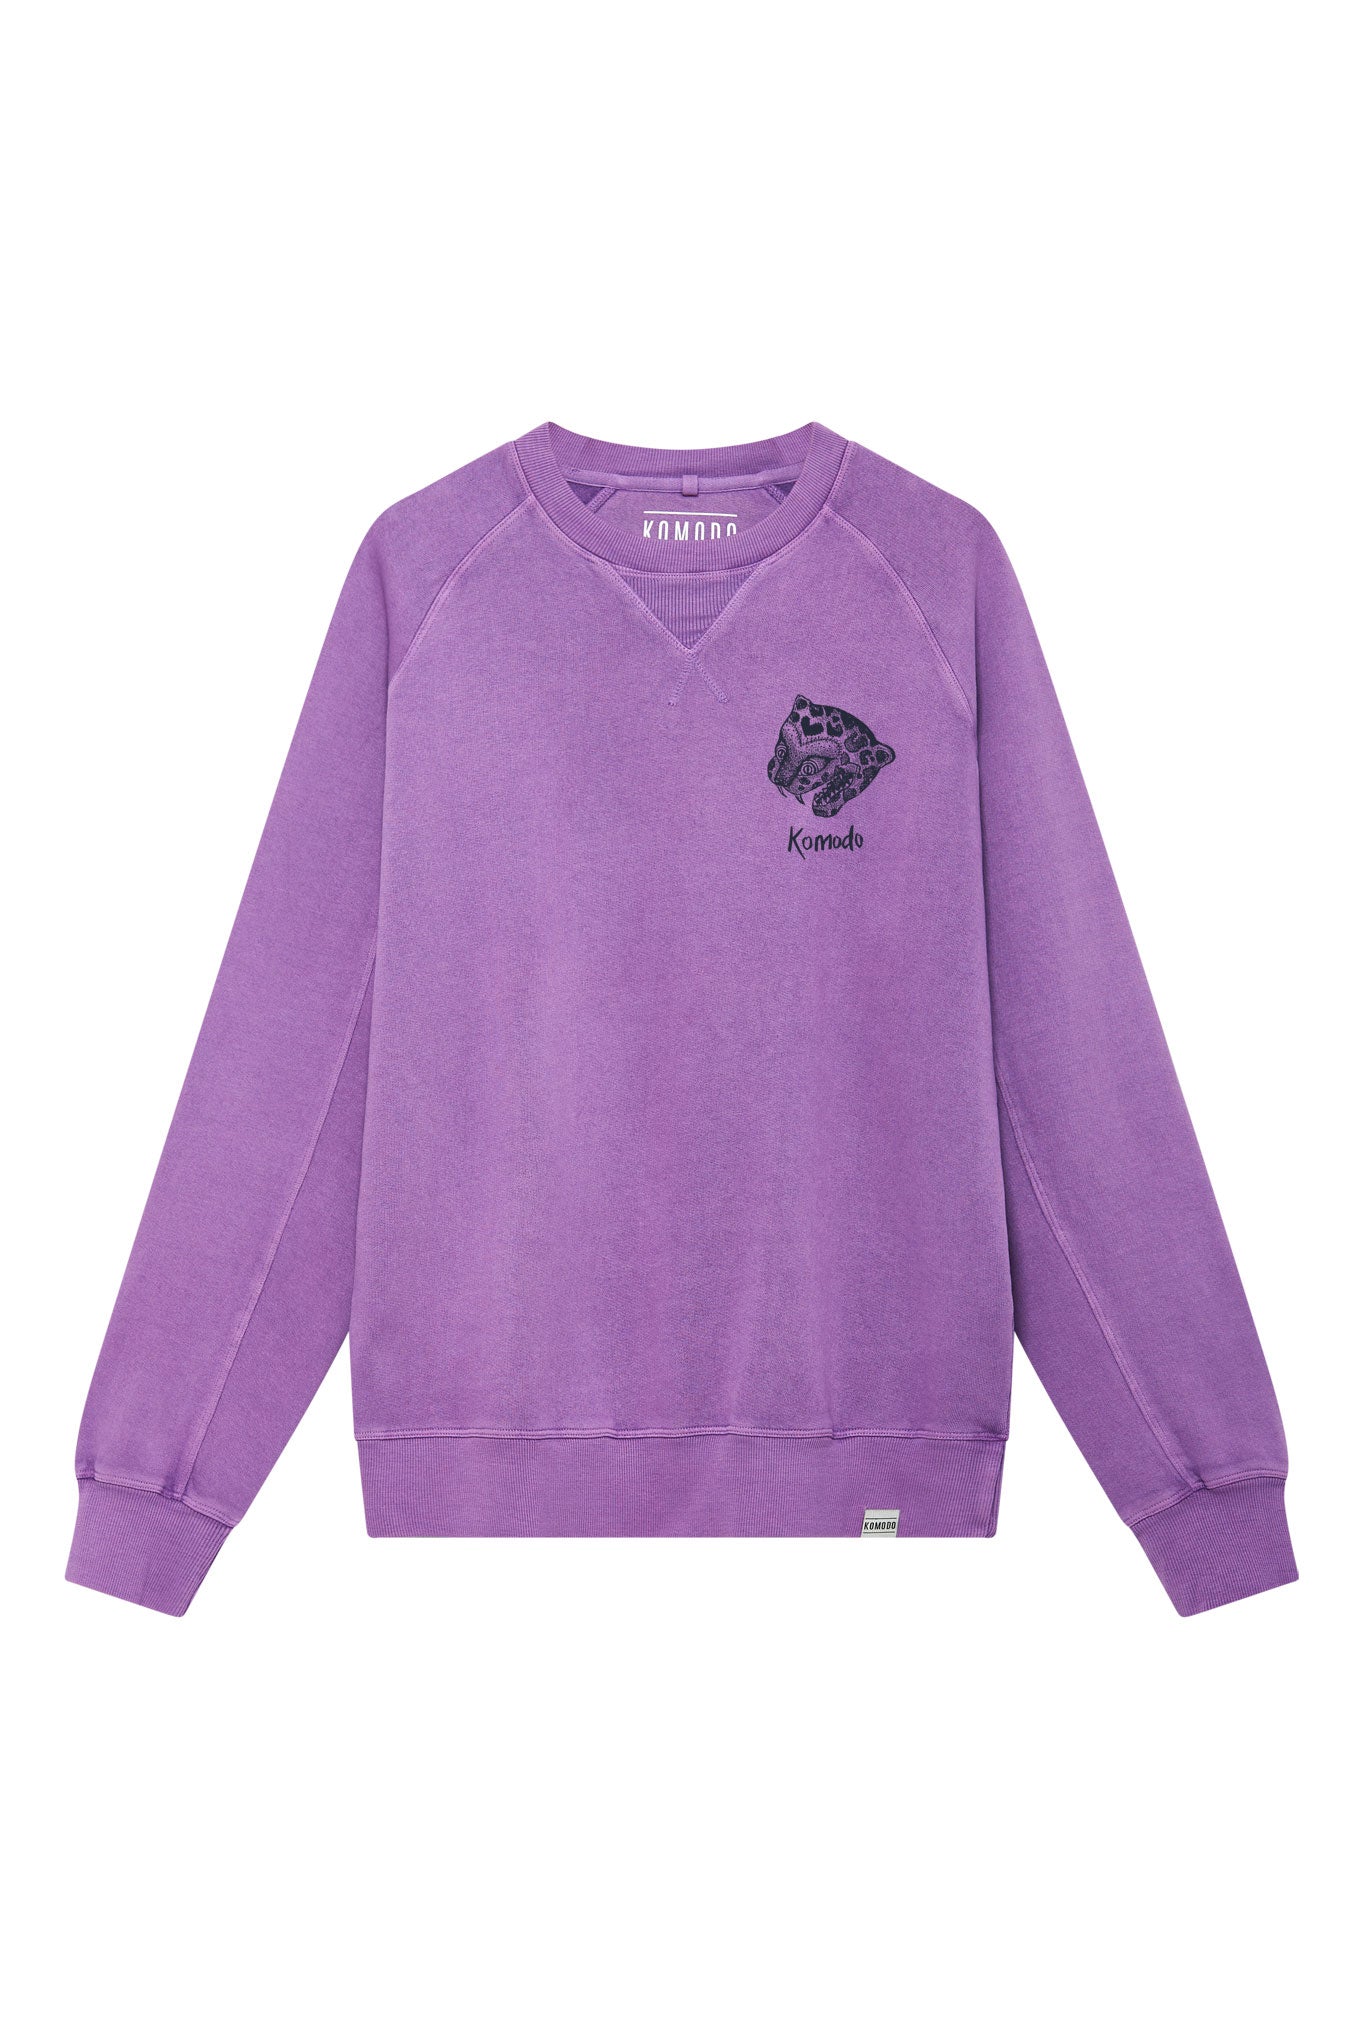 Pull violet à manches longues NEPALI LEOPARD en coton 100% biologique de Komodo